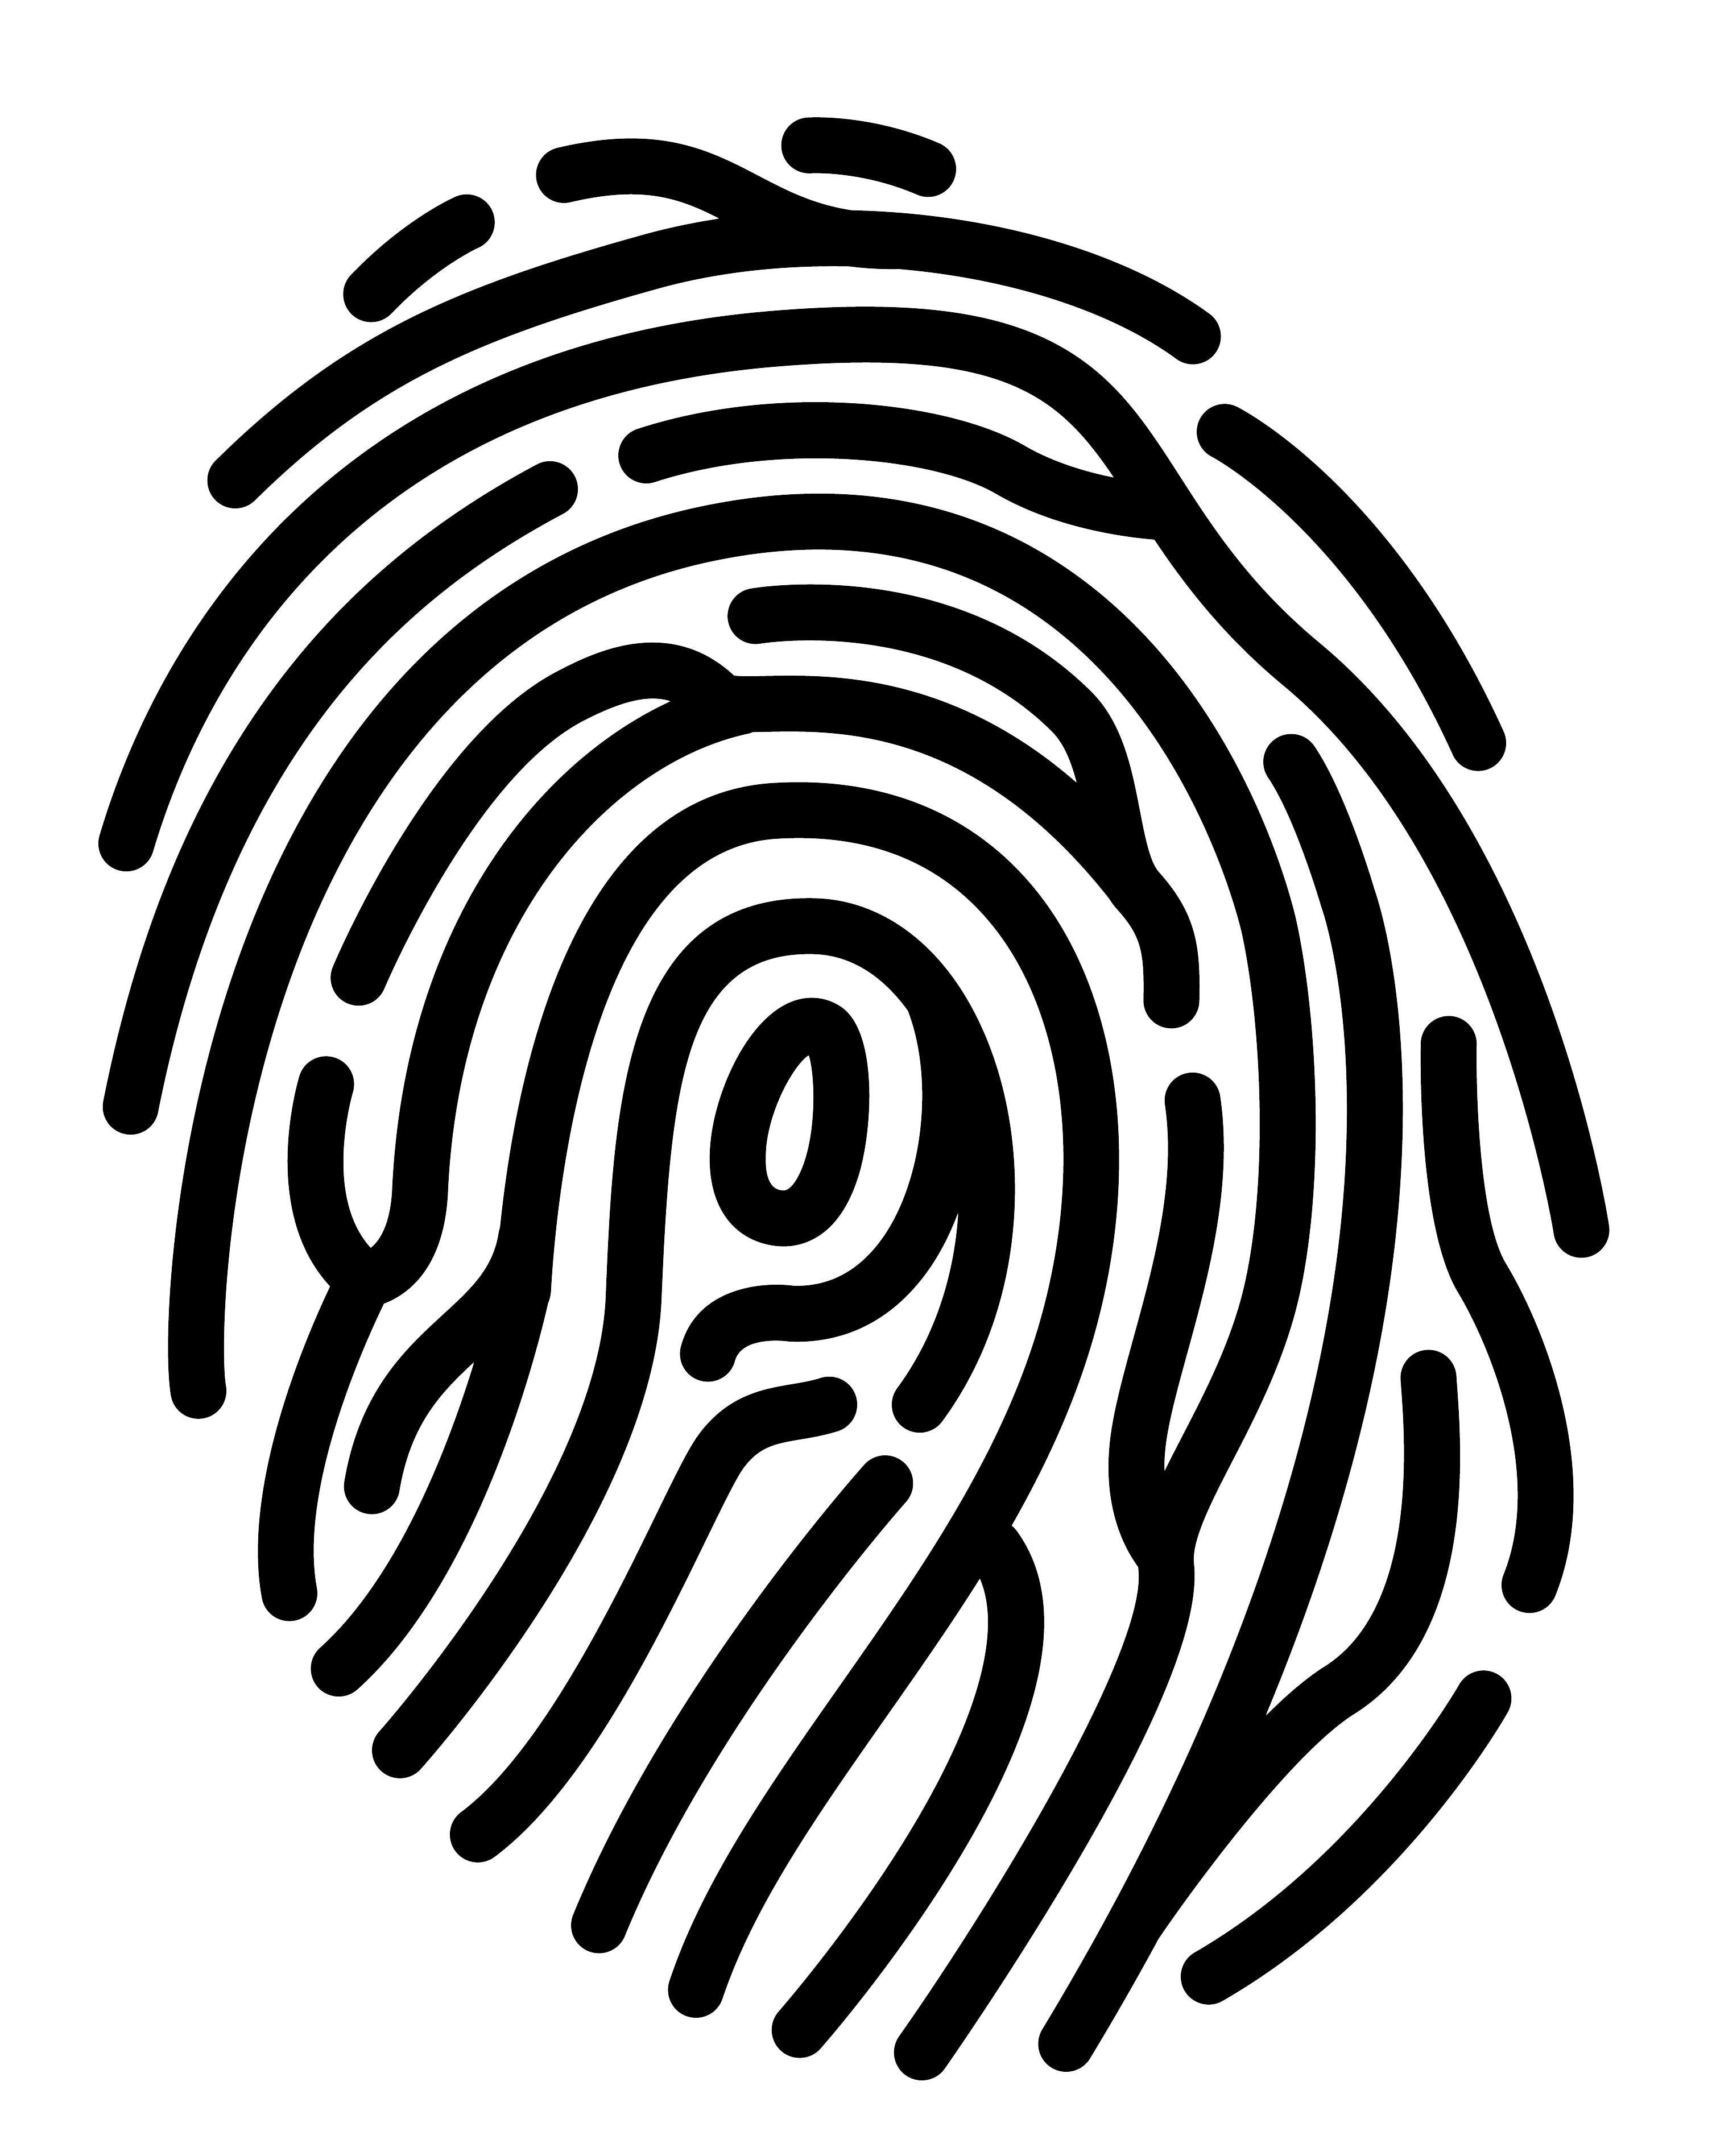 Immagine PNG della siluetta dellimpronta digitale